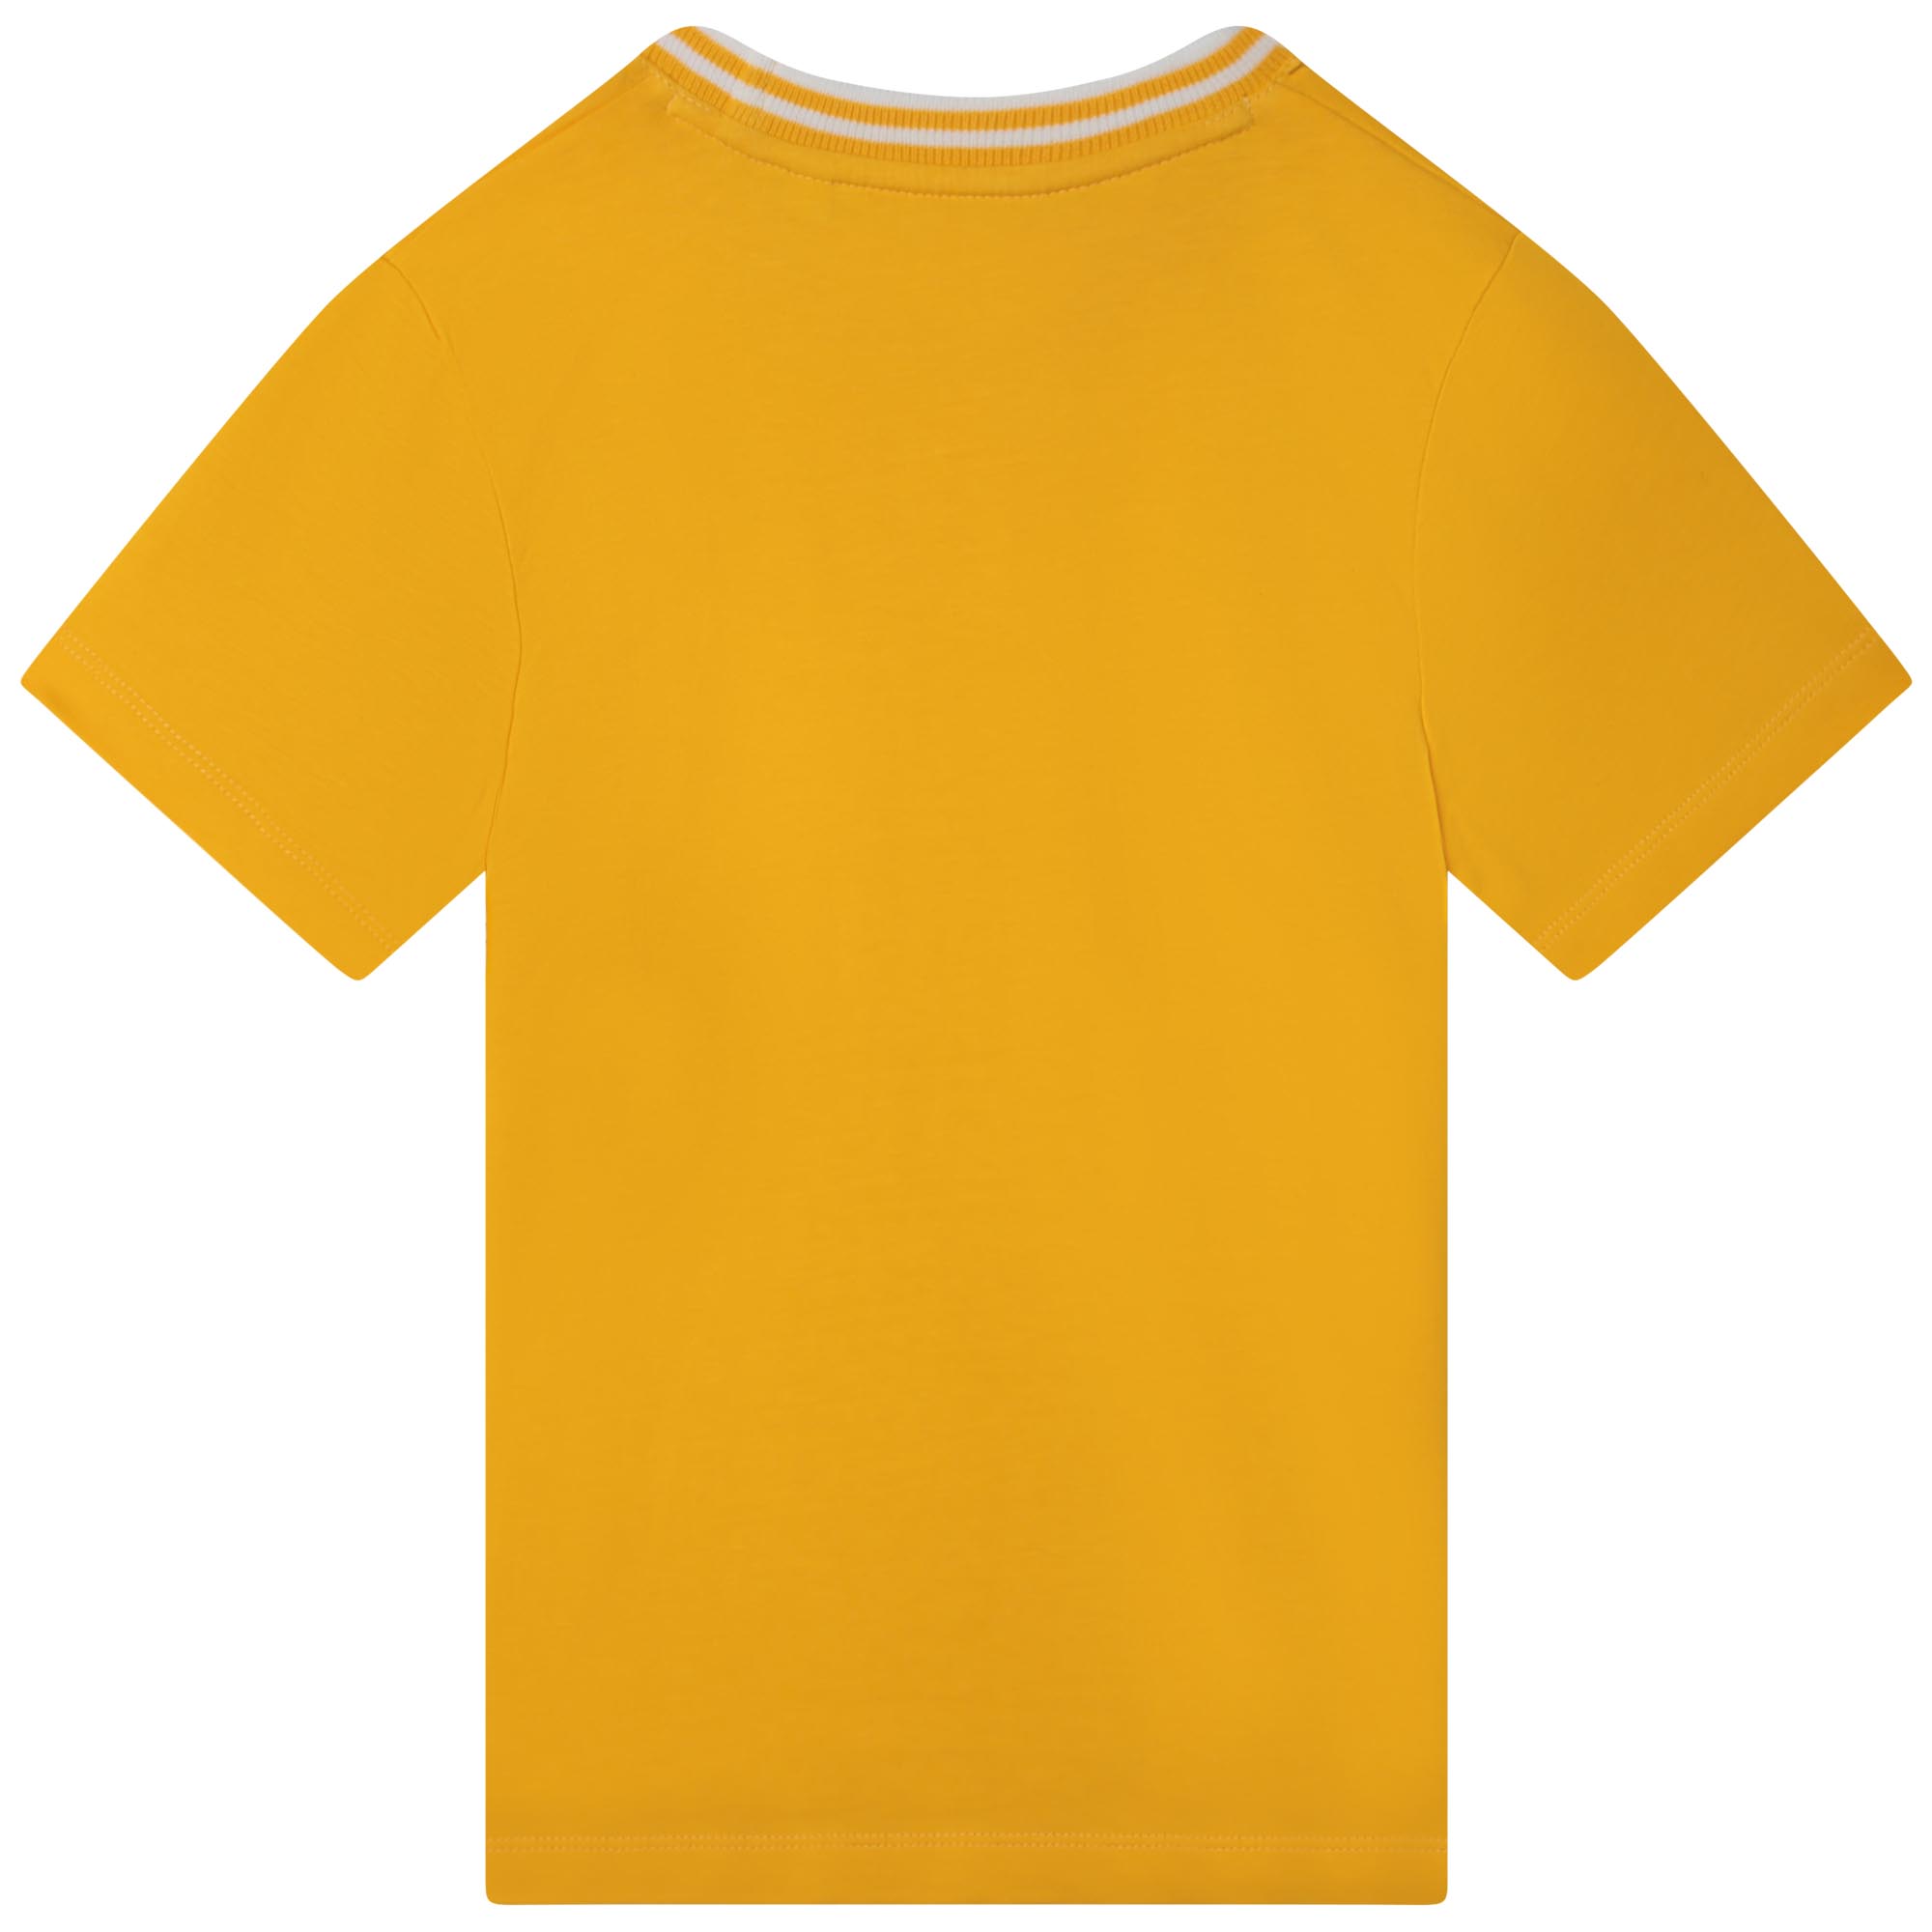 T-shirt con collo a righe AIGLE Per UNISEX